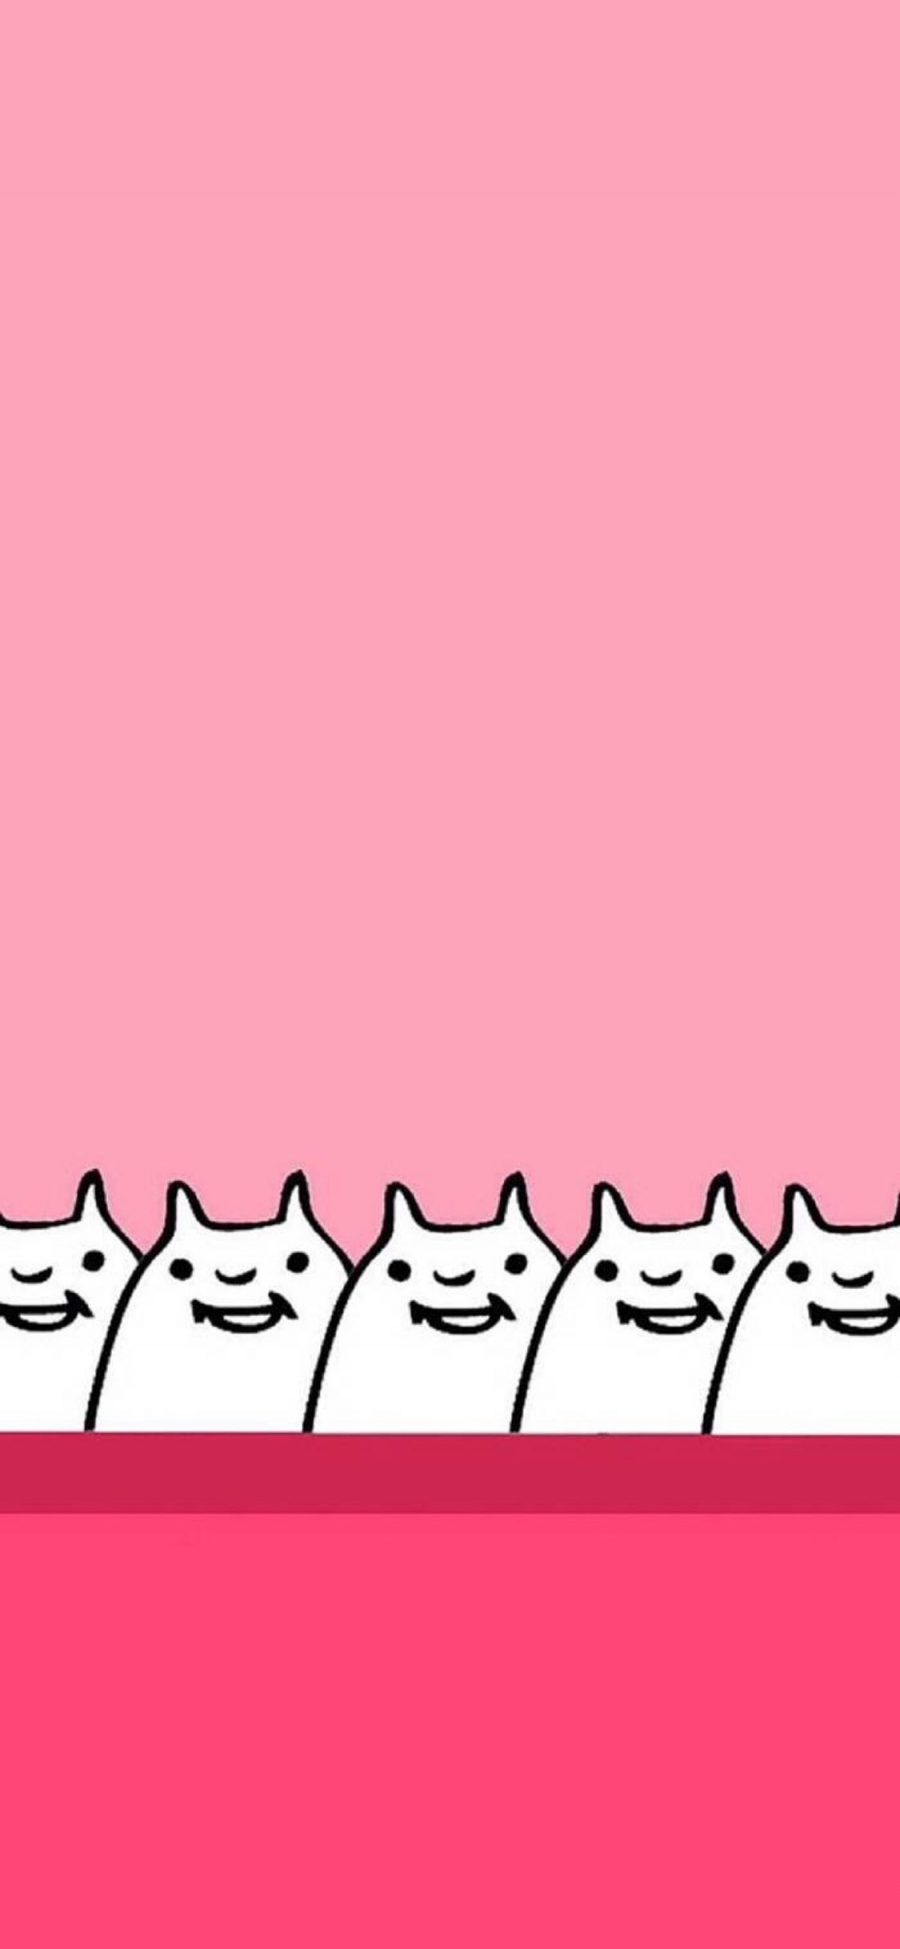 [2436×1125]粉色背景 卡通 简笔 兔子 苹果手机动漫壁纸图片